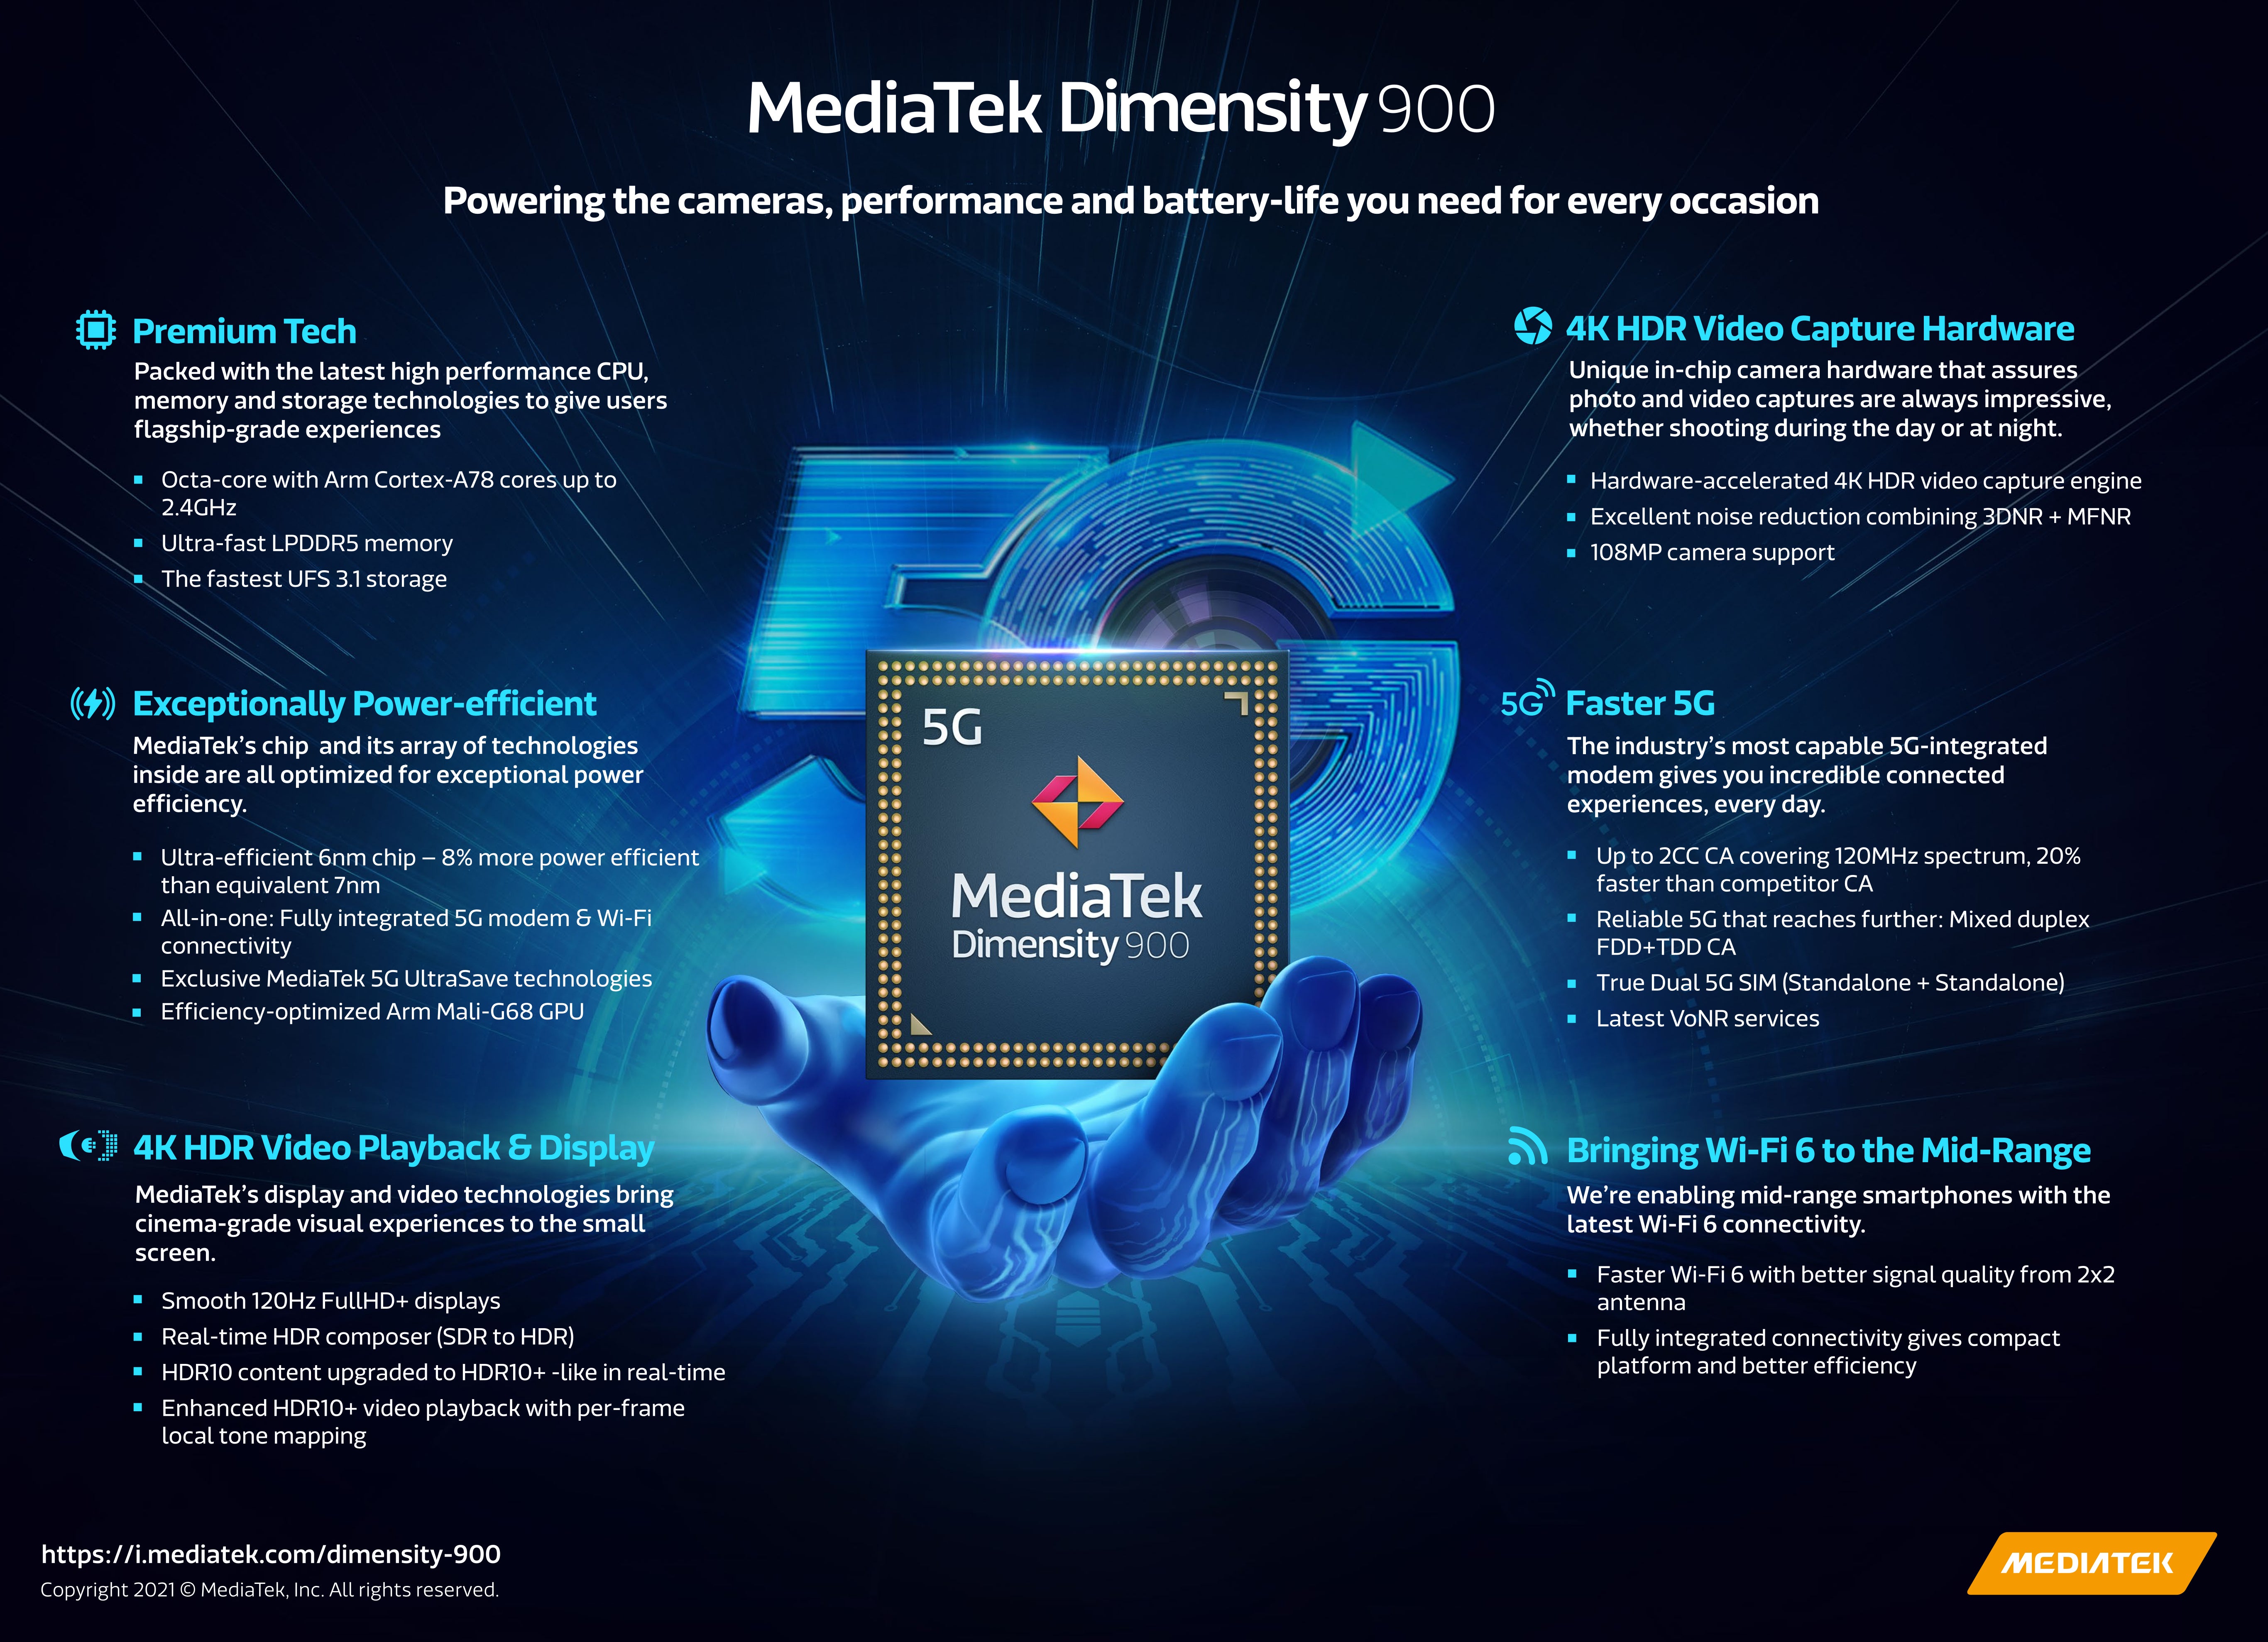 MediaTek Dimensity 900 infographic - Dimensity 900 is MediaTek's new 6nm chipset for 5G mid-range smartphones